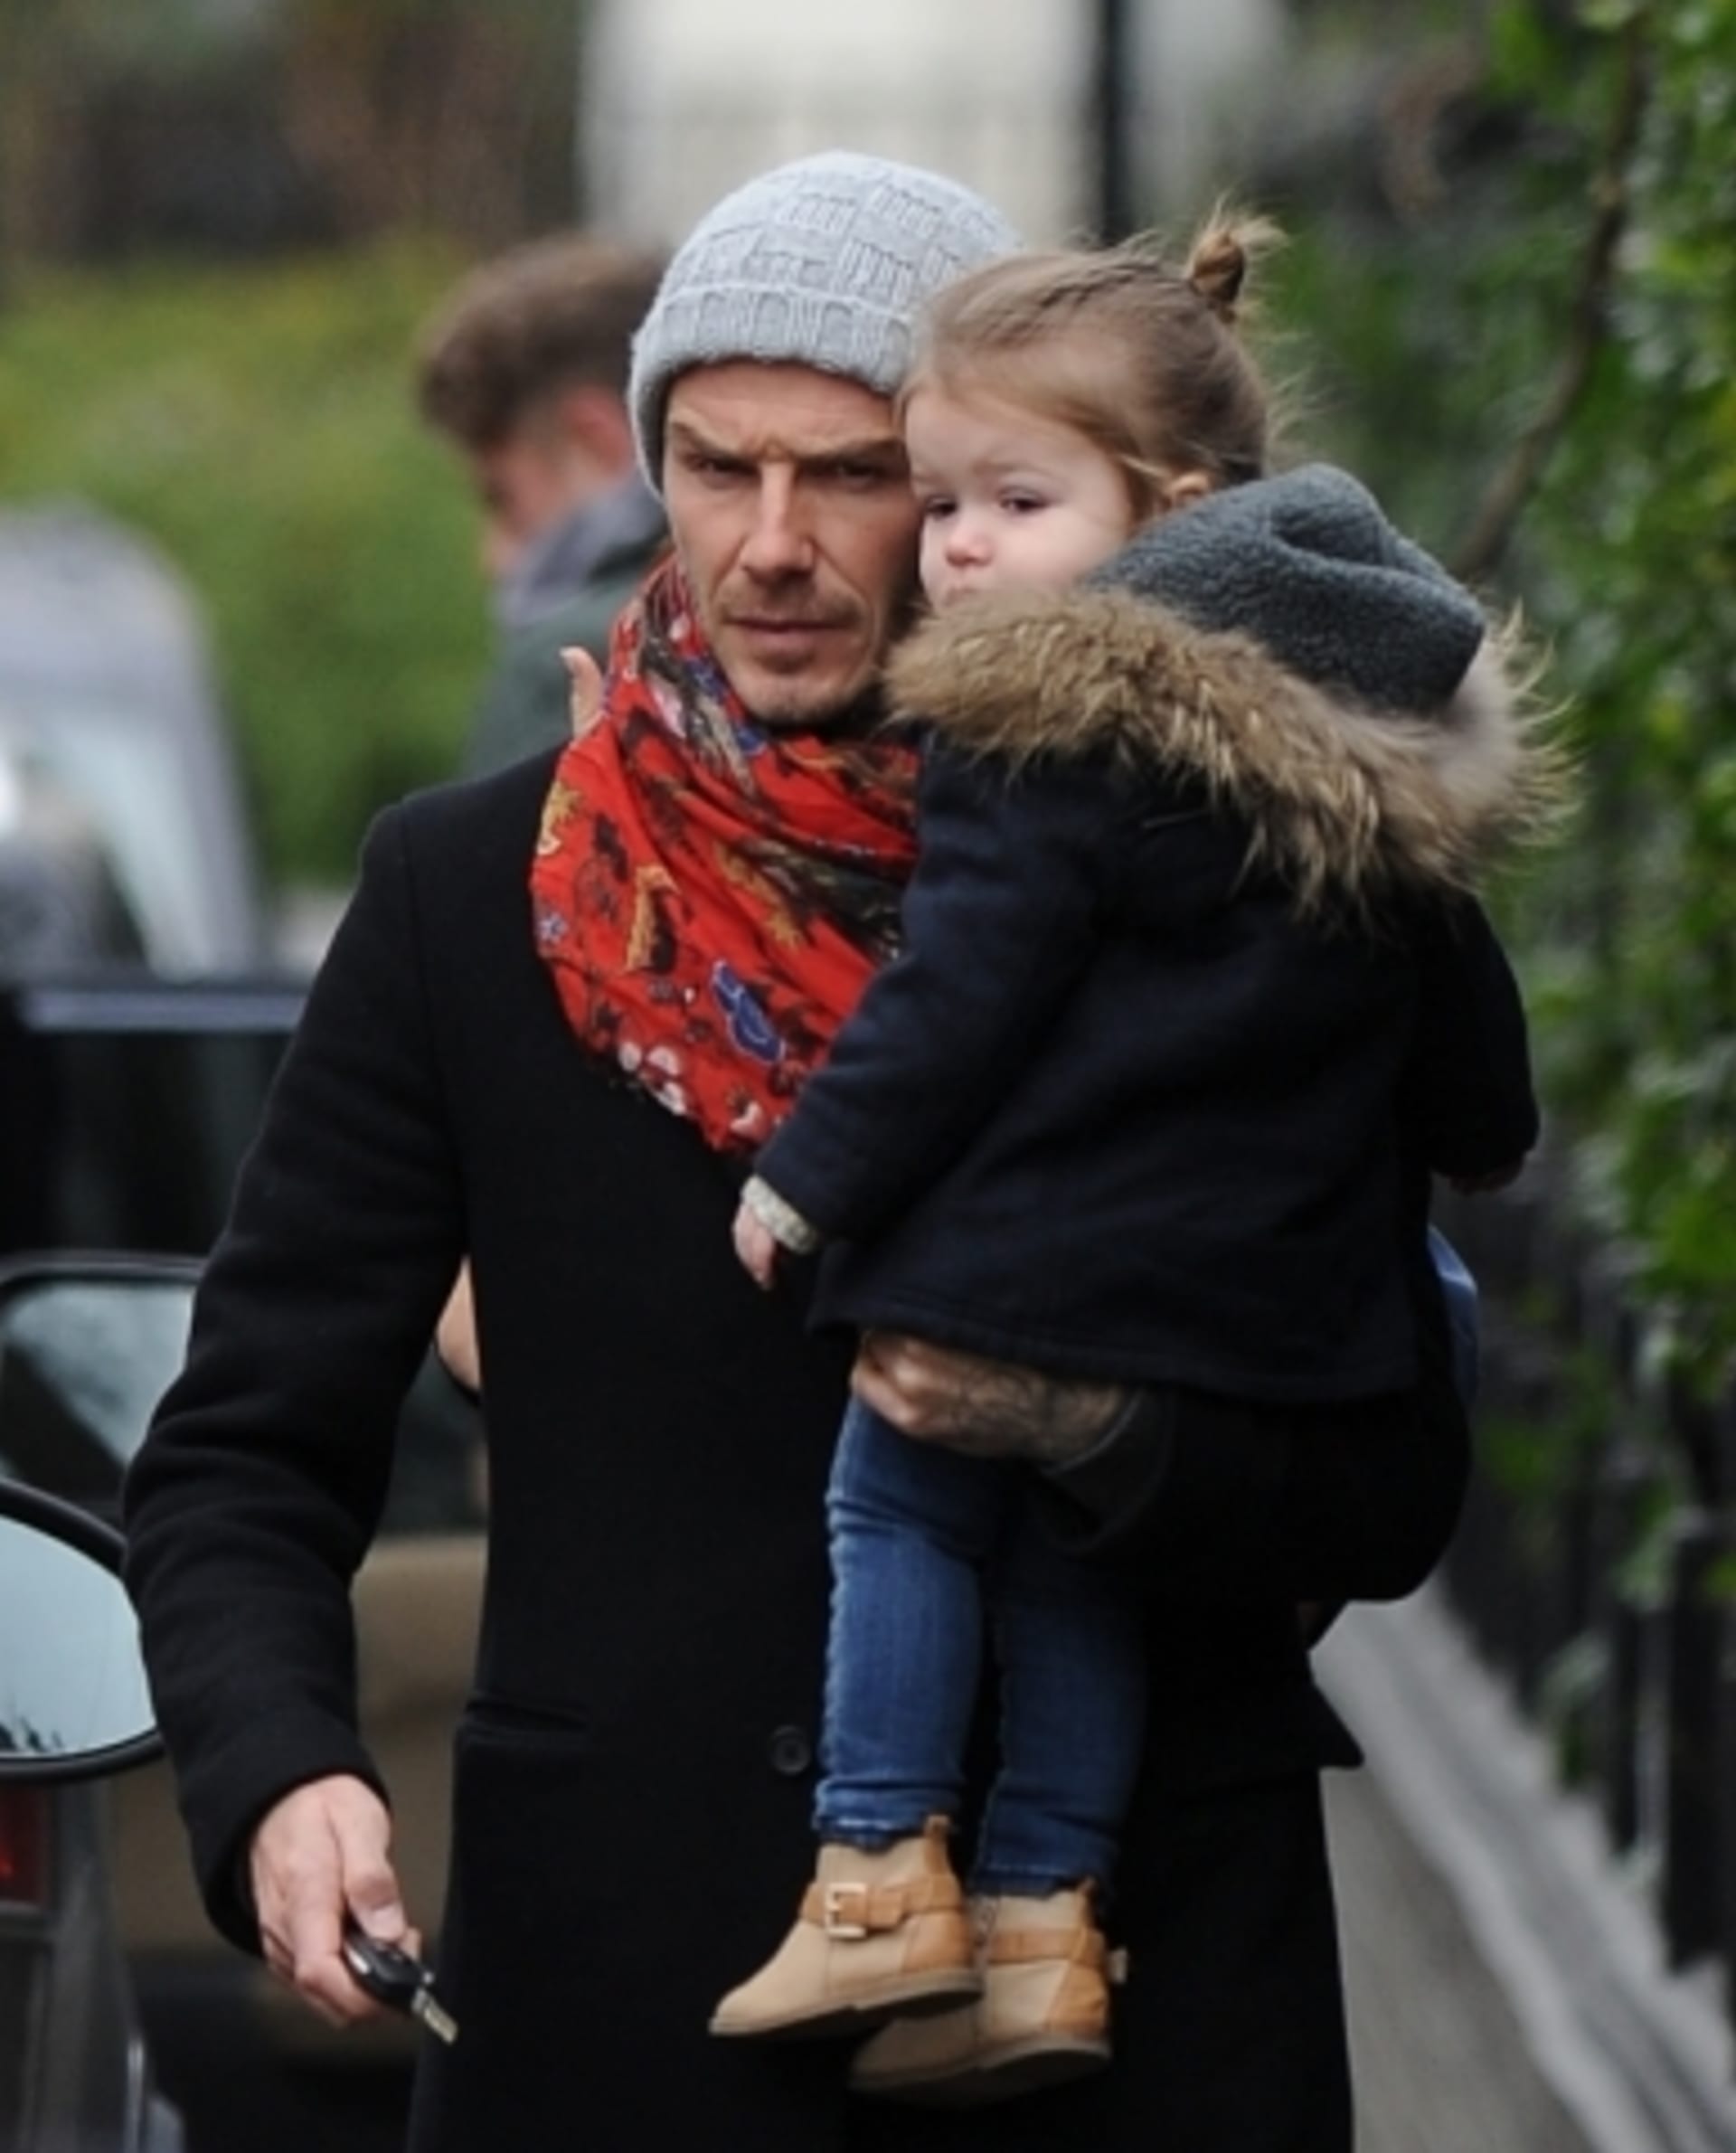 David Beckham s dcerou Harper